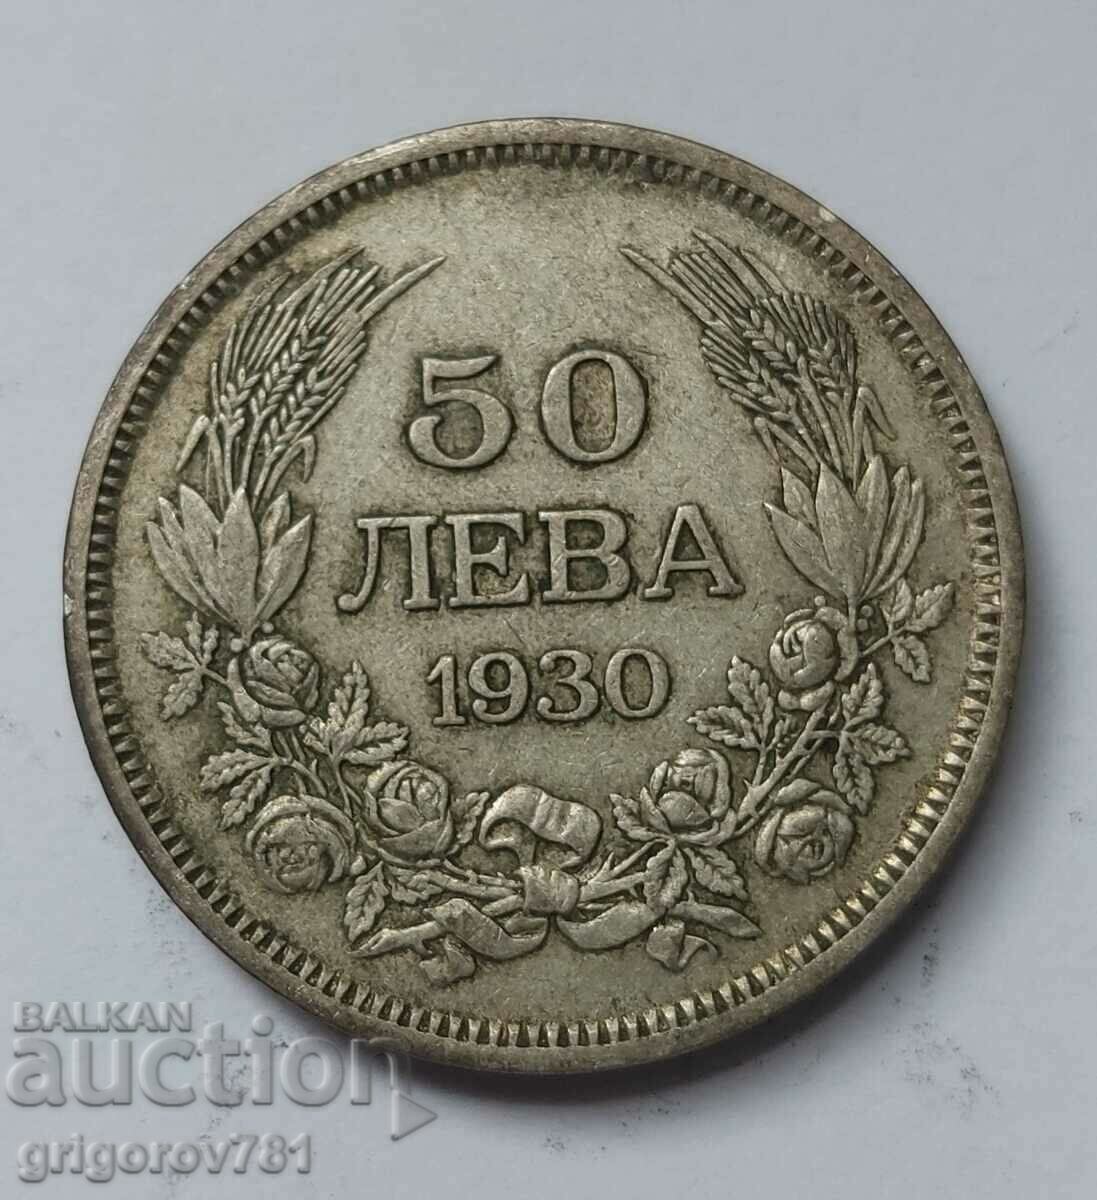 Ασήμι 50 λέβα Βουλγαρία 1930 - ασημένιο νόμισμα #51